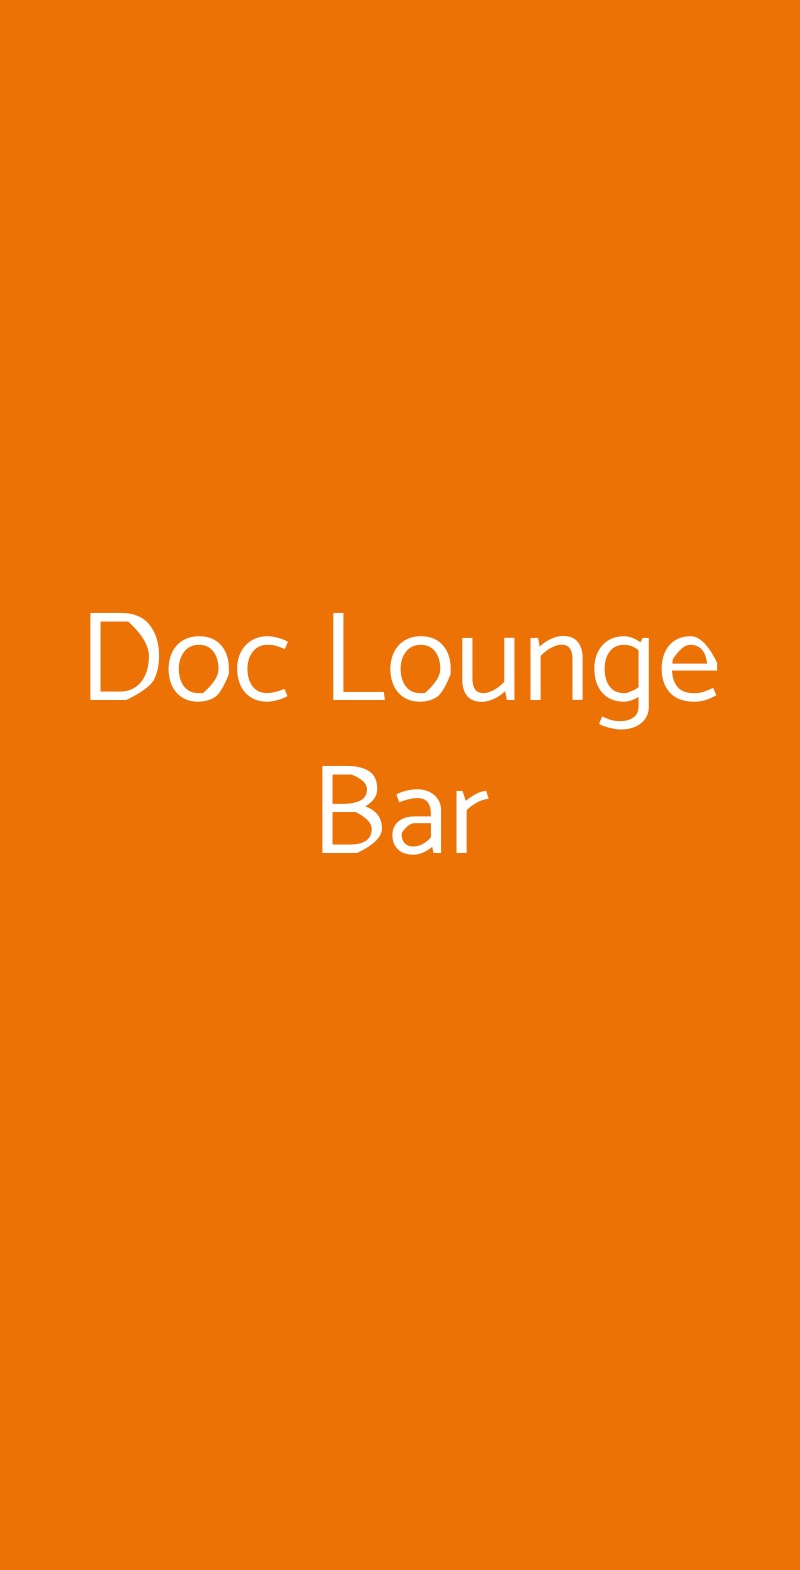 Doc Lounge Bar Bologna menù 1 pagina